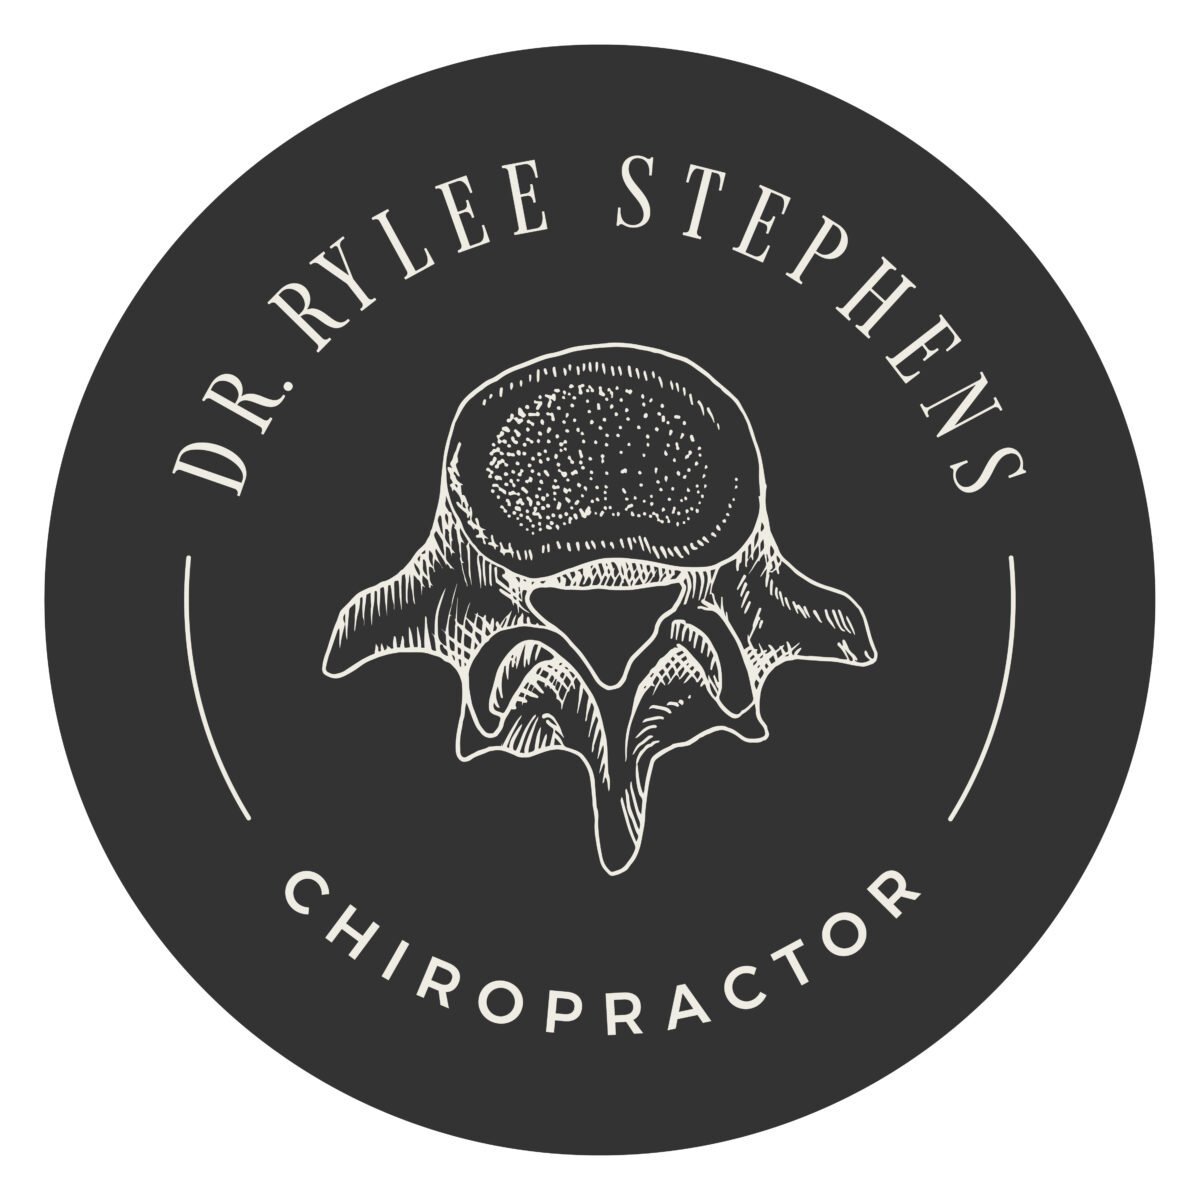 lindsay-mcghee-designs-rylee-stephens-chiropractor-Logo-Badge-Charcoal-Invert